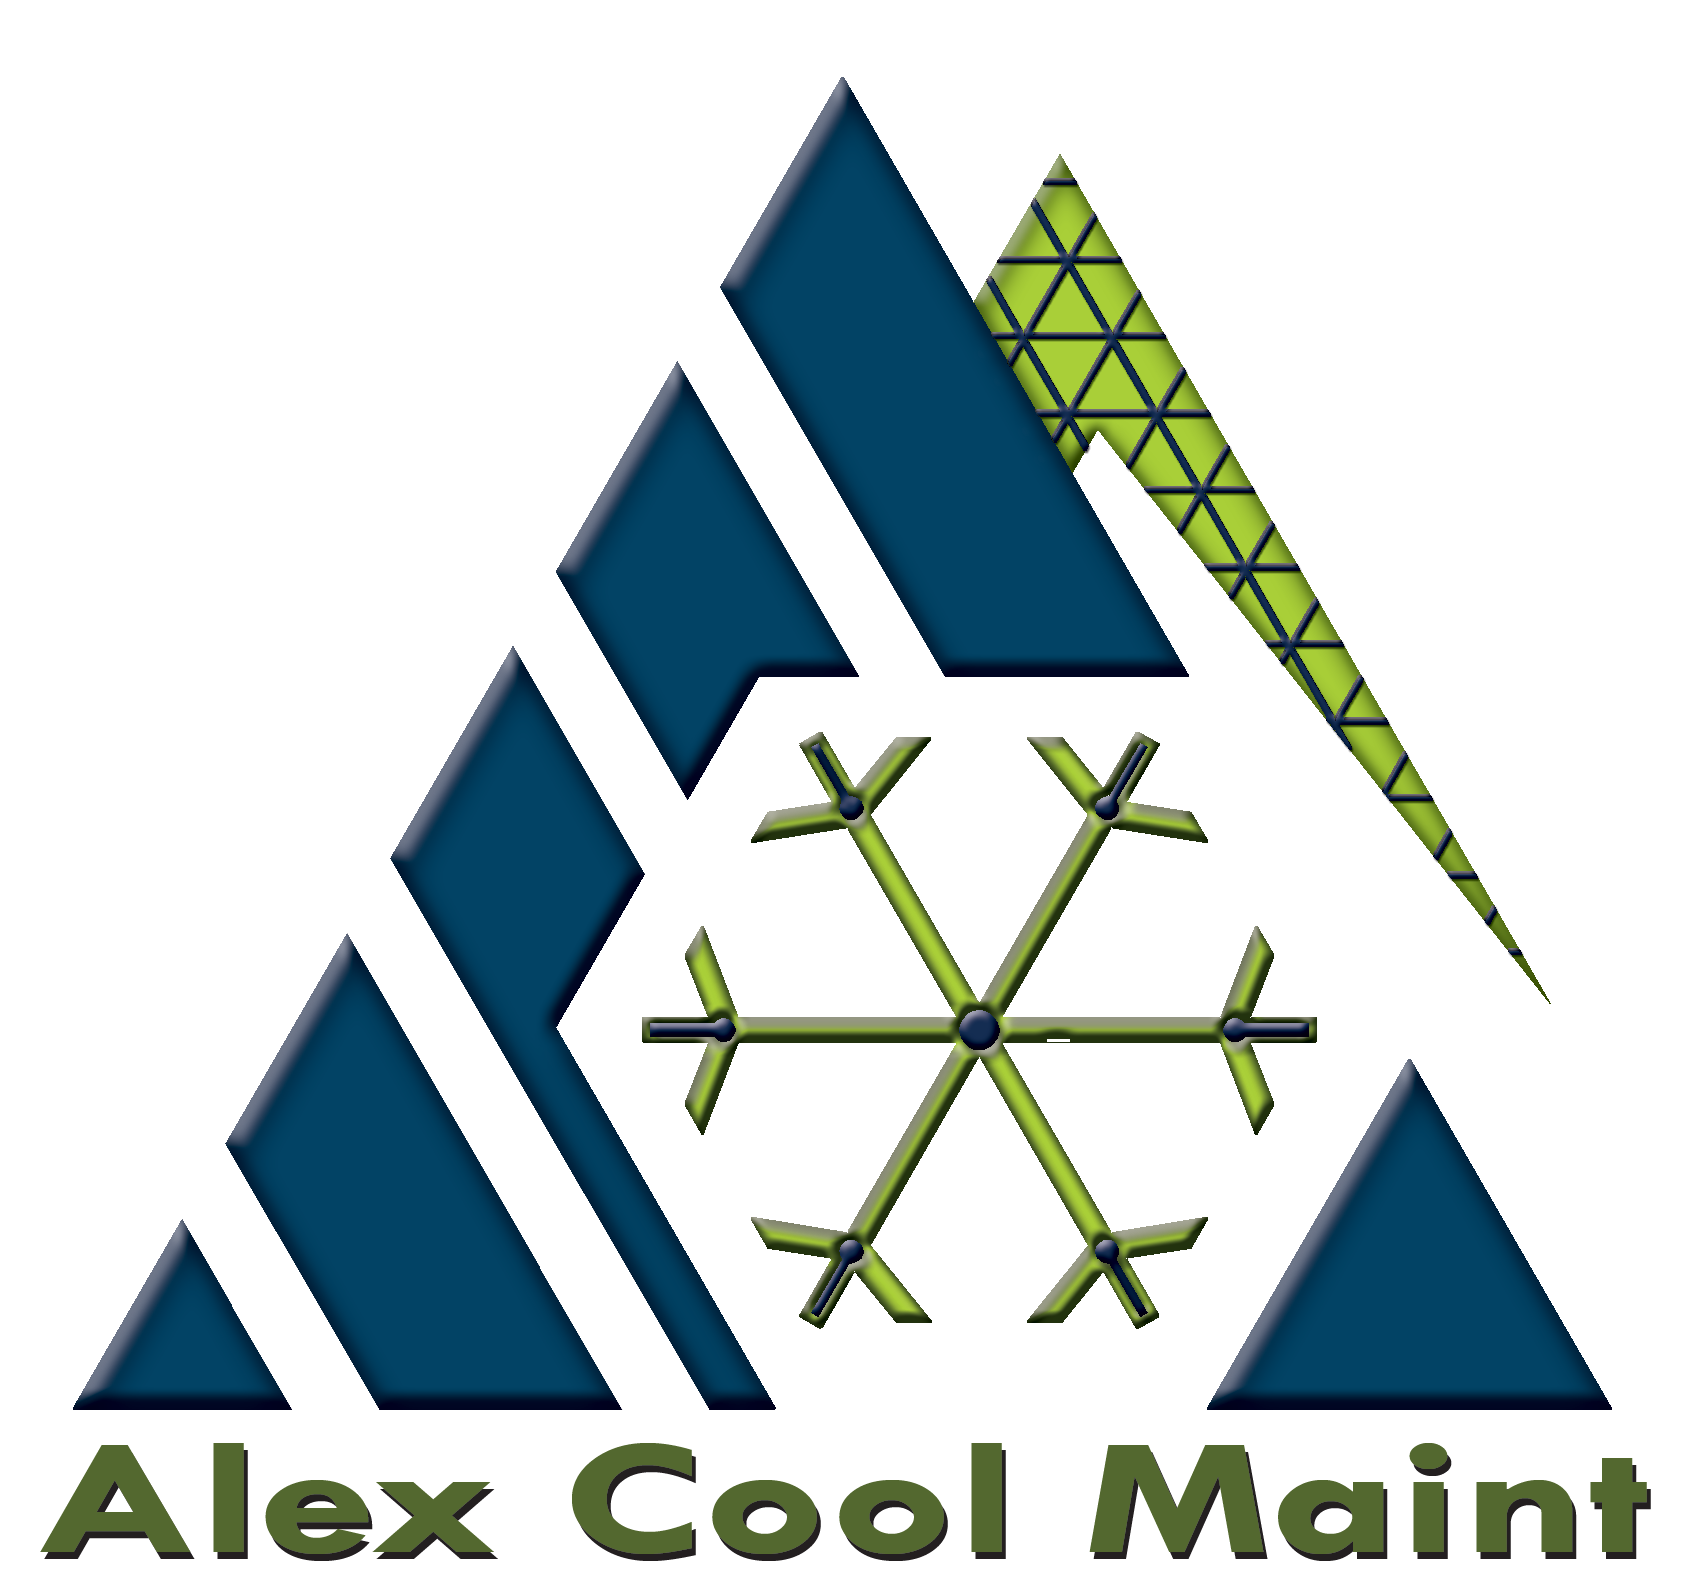 Alex Cool Maint Co.